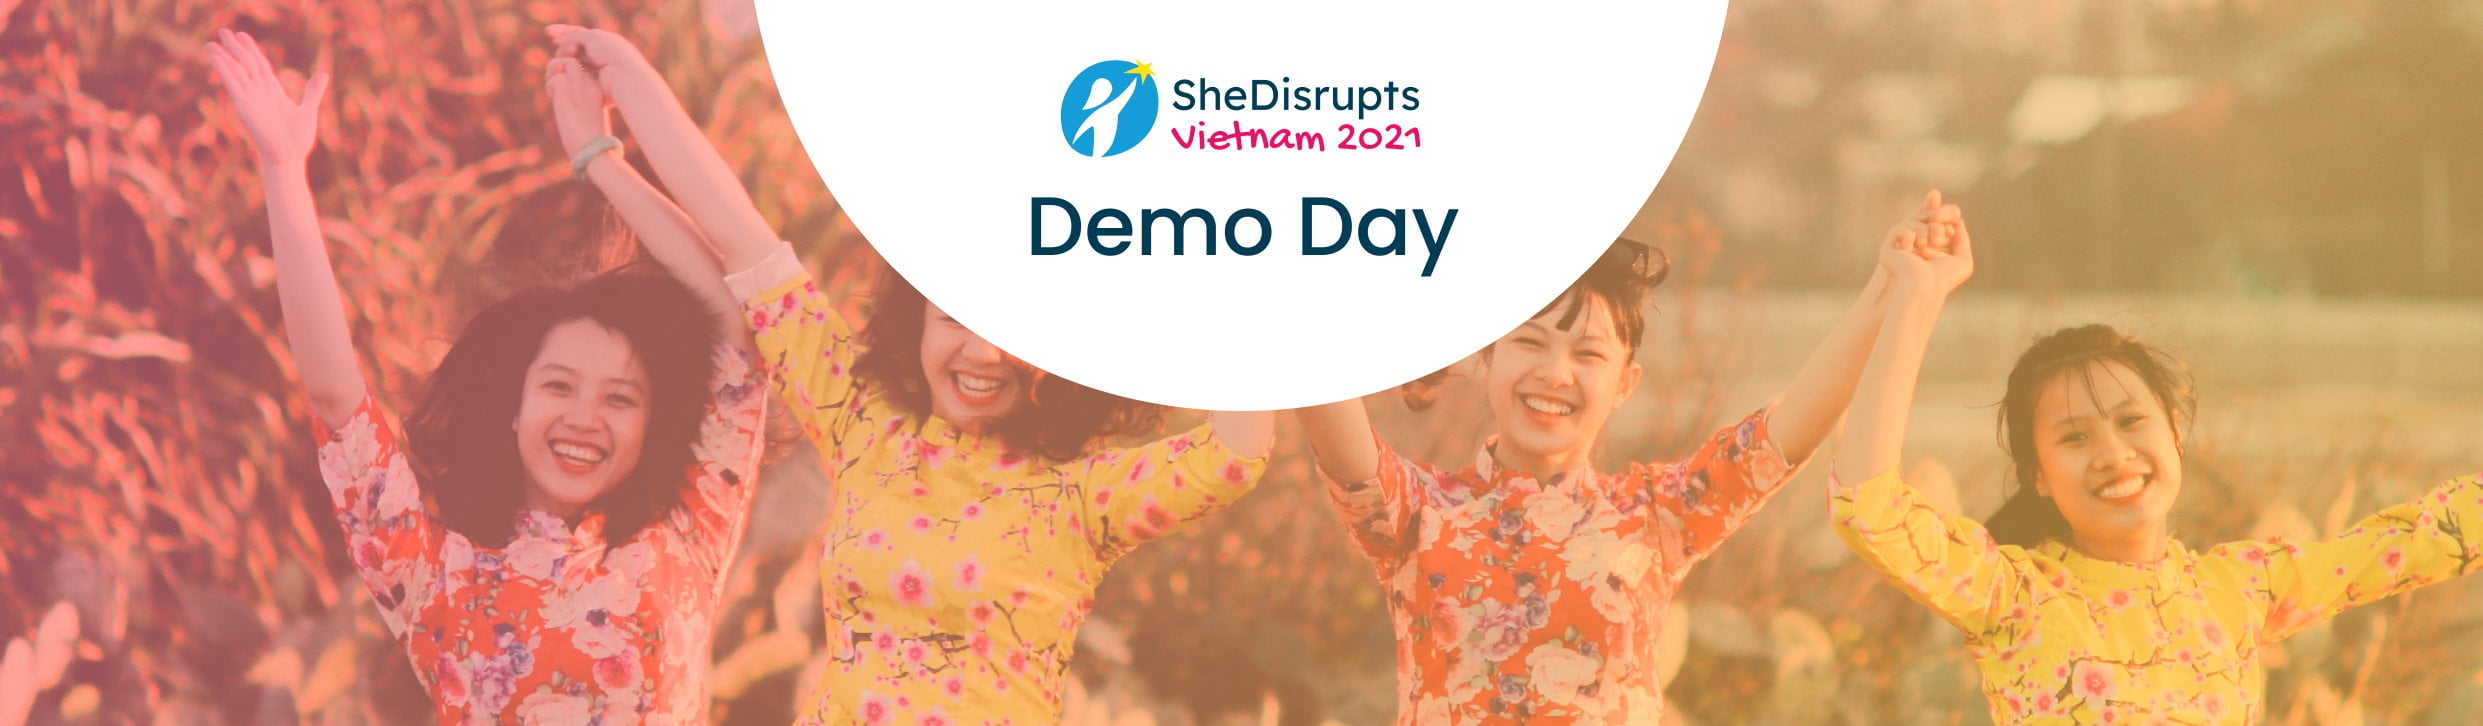 SheDisrupts Vietnam 2022 Demo Day